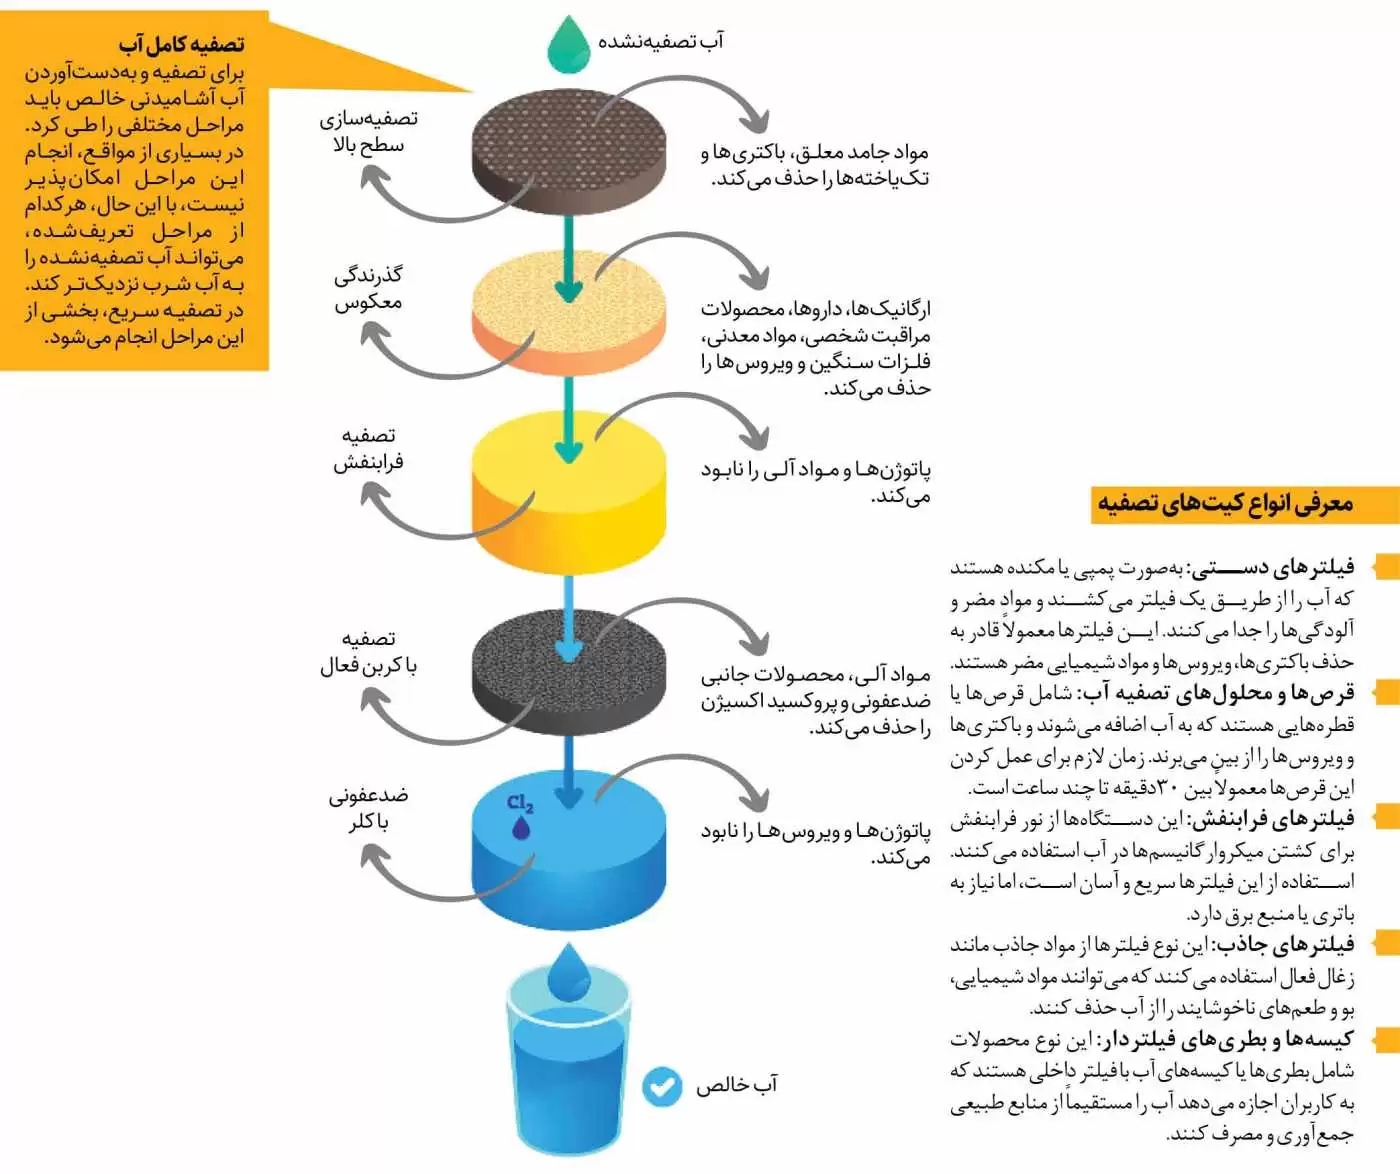 تصفیه سریع آب با فناوری ایرانی  -  کیت های تصفیه آب می توانند جان انسان  را نجات دهند